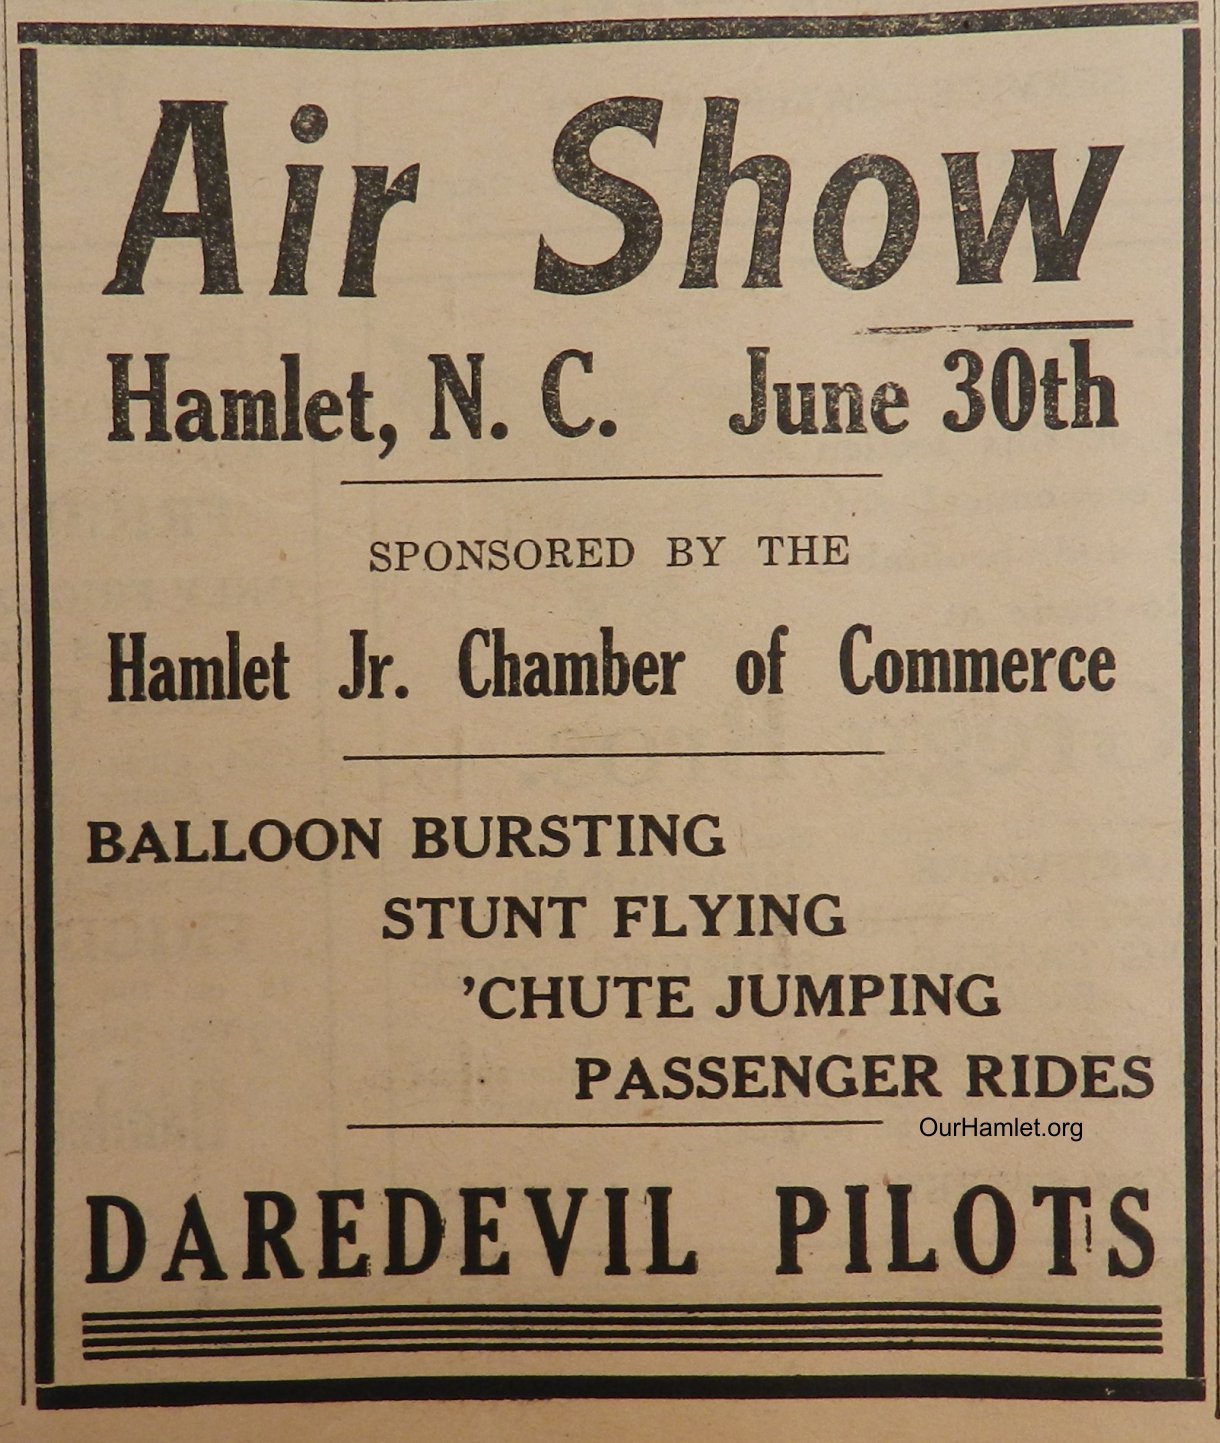 1935 Air Show OH.jpg